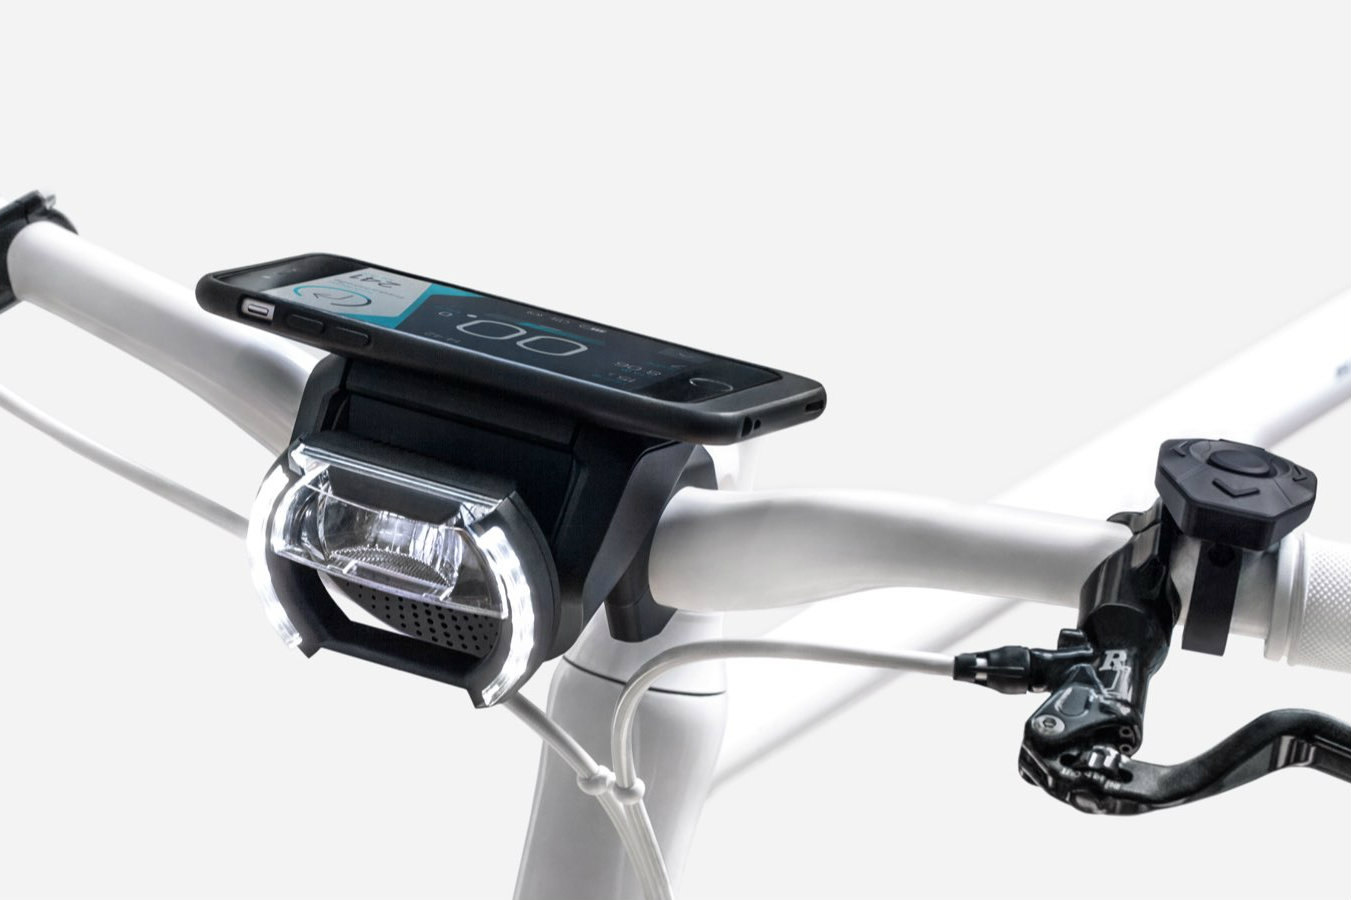 cobi connected biking bike routes navigation render mount front